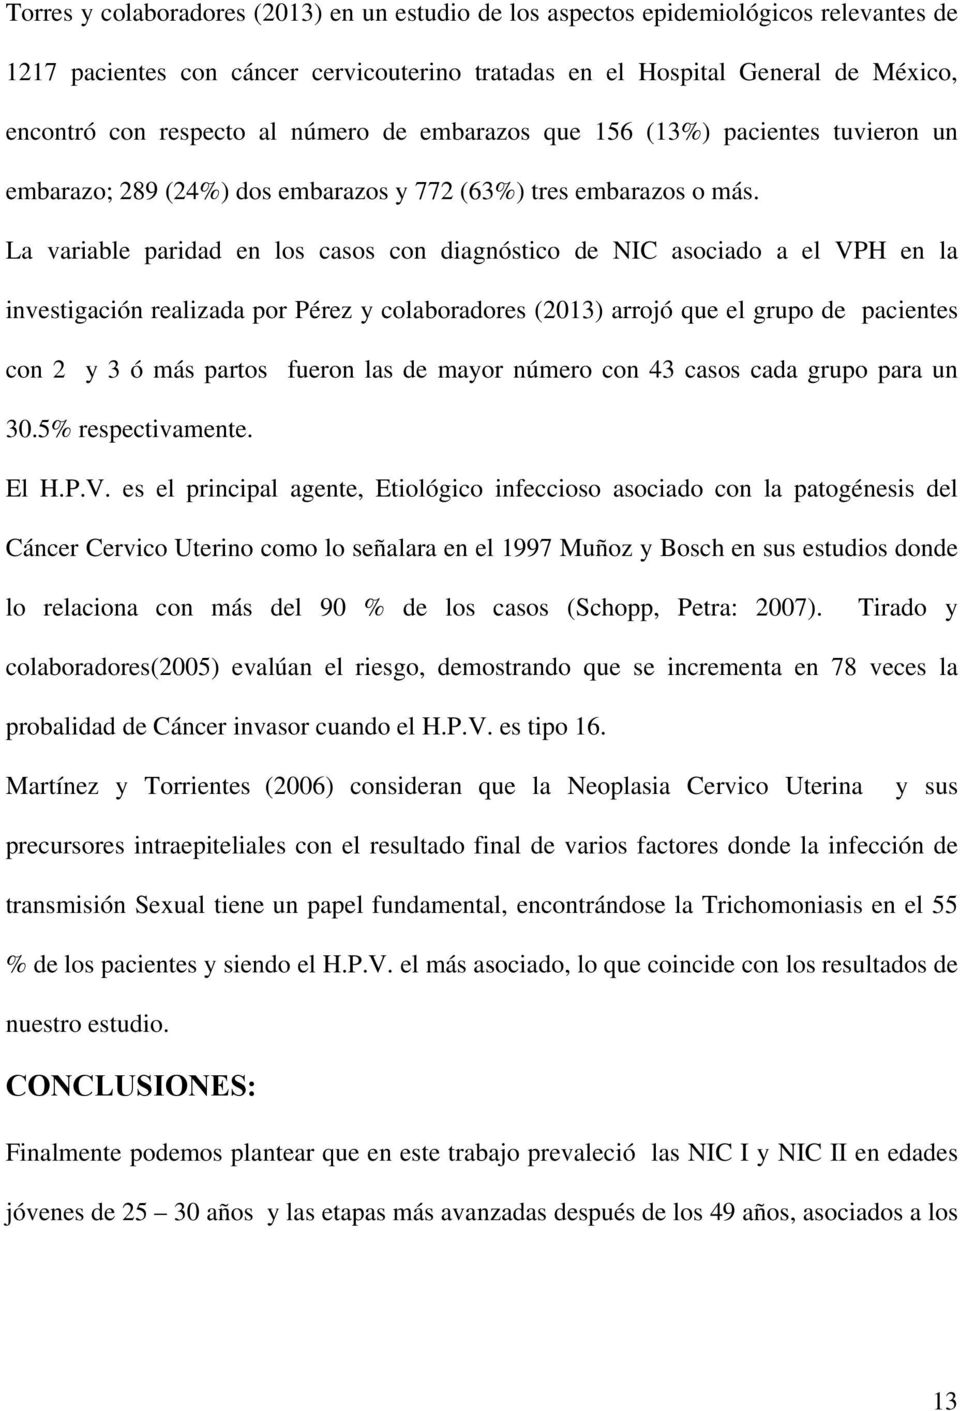 La variable paridad en los casos con diagnóstico de NIC asociado a el VPH en la investigación realizada por Pérez y colaboradores (2013) arrojó que el grupo de pacientes con 2 y 3 ó más partos fueron